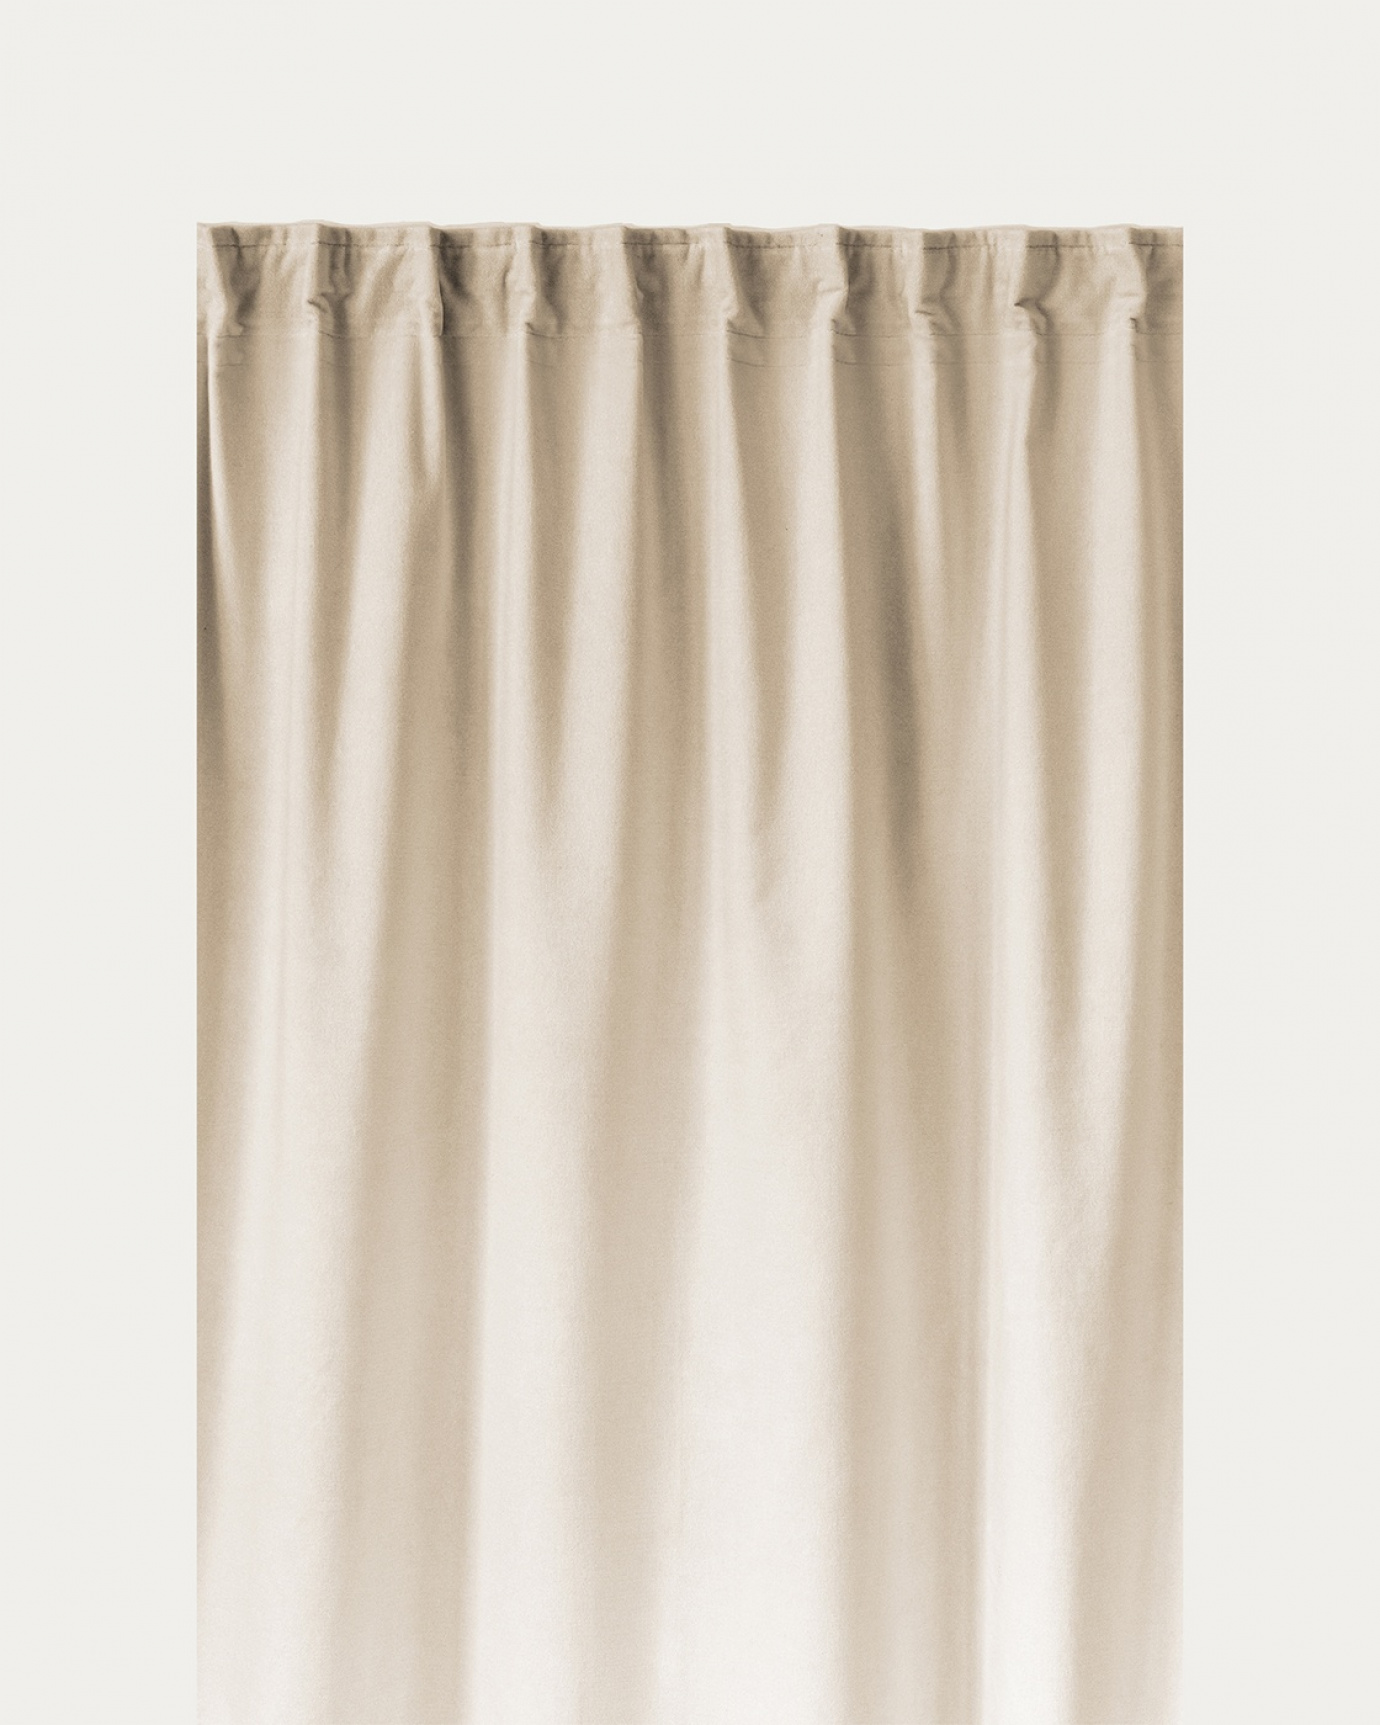 Immagine prodotto beige crema PAOLO tenda panna in velluto di cotone con nastro plissettato rifinito di LINUM DESIGN. Dimensioni 135x290 cm e venduto in 2-pezzi.